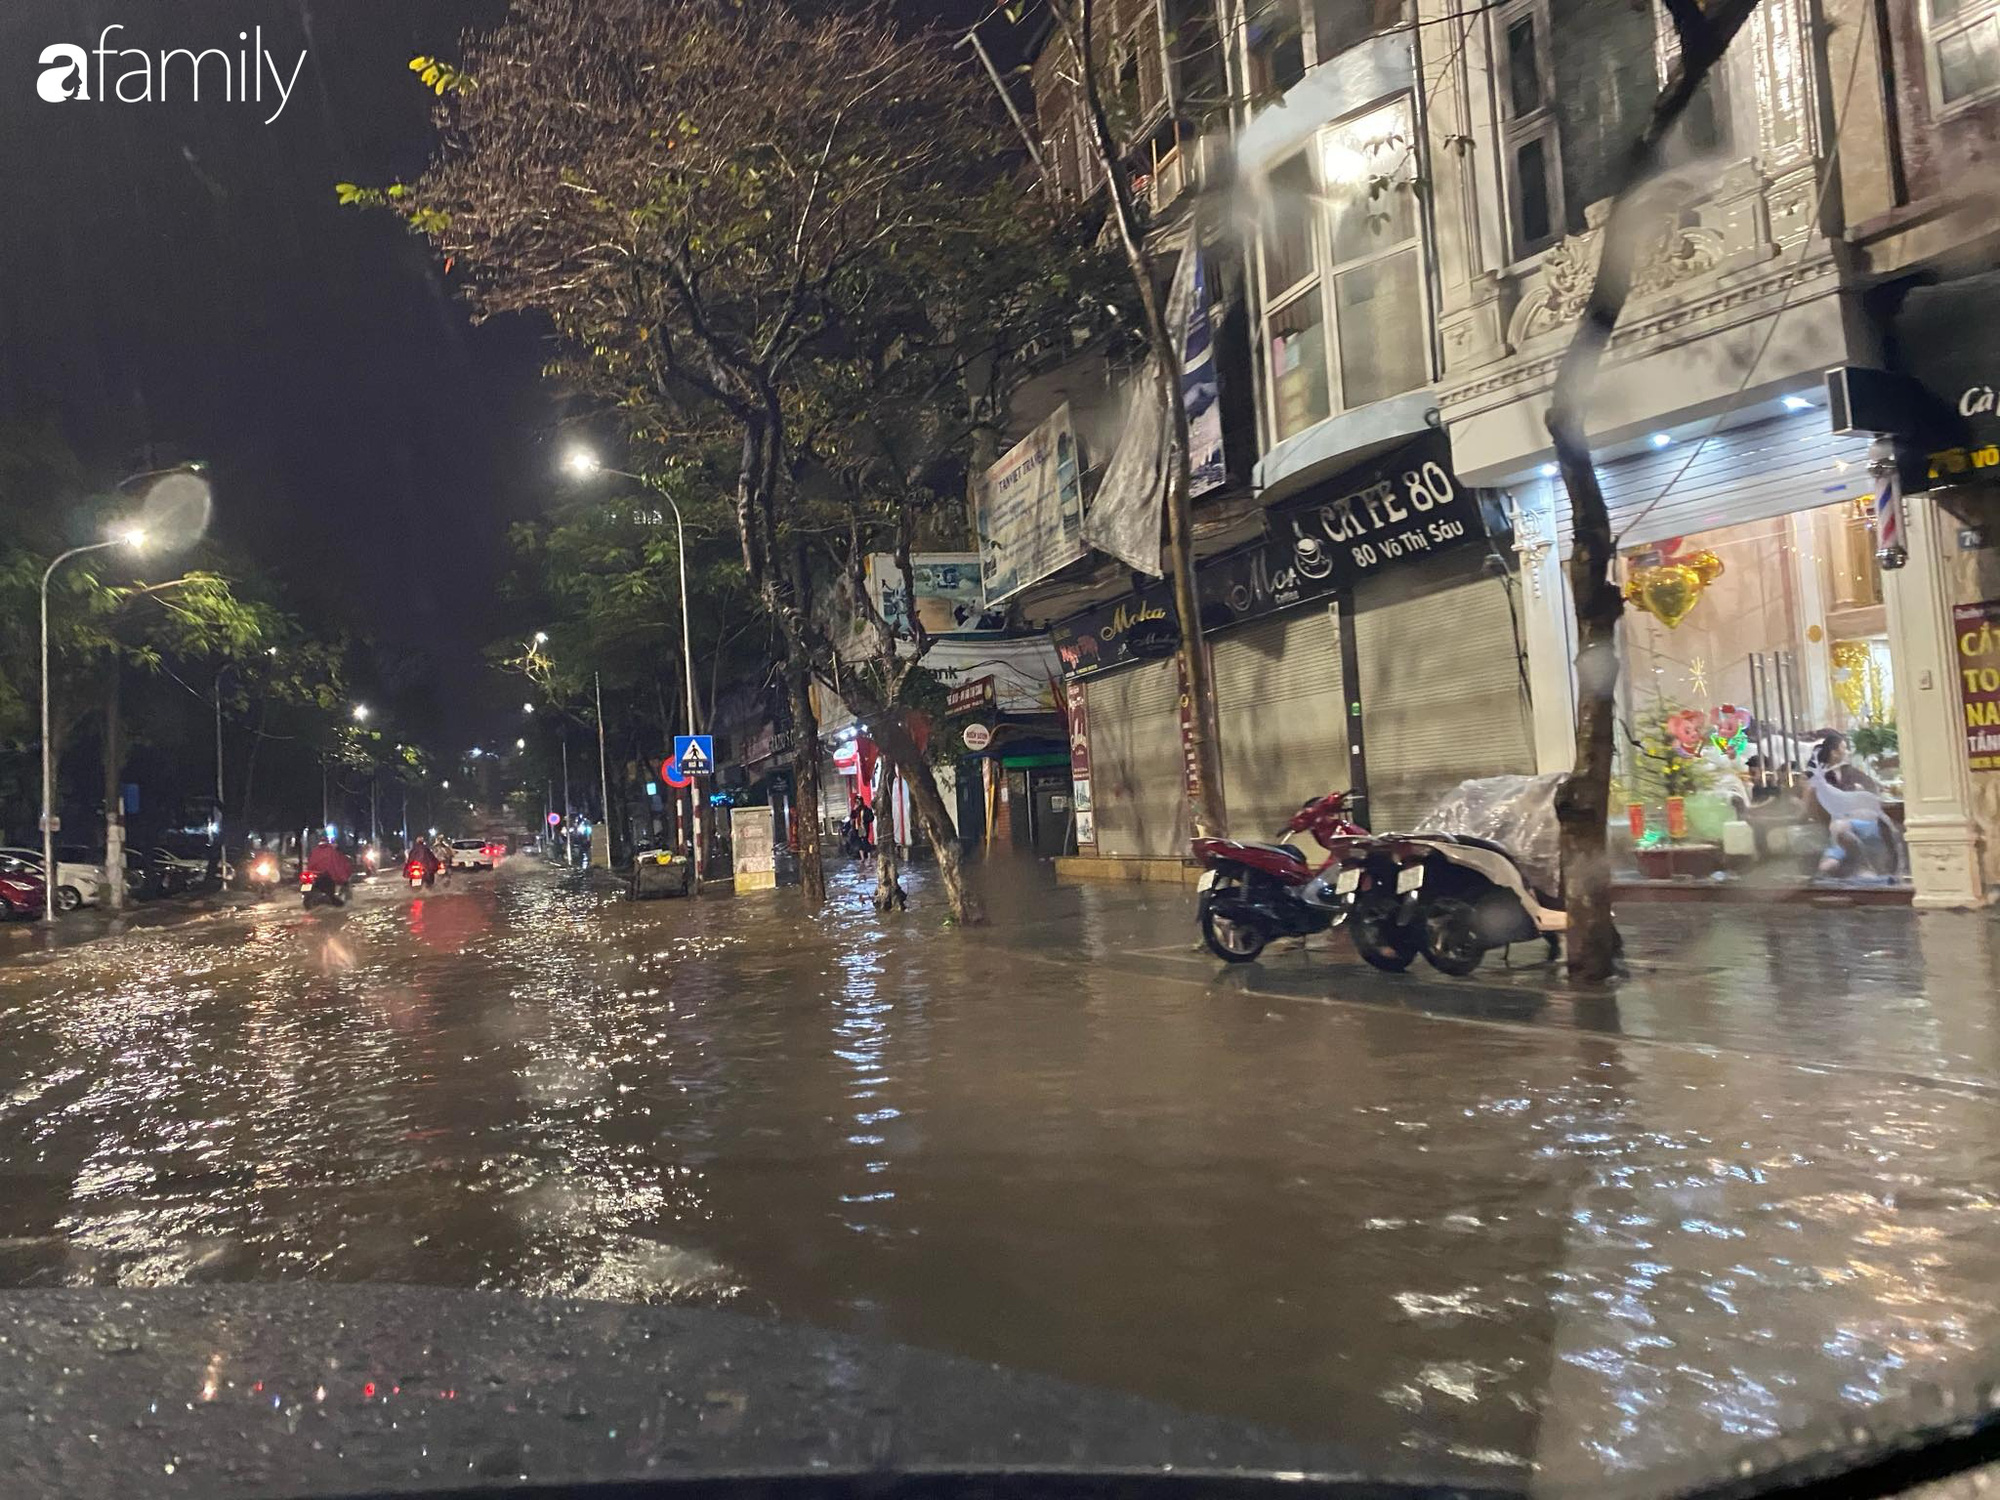 Lần đầu tiên người Hà Nội đón giao thừa trong cơn mưa gió, khắp đường phố trở nên vắng lặng đến lạ thường - Ảnh 11.